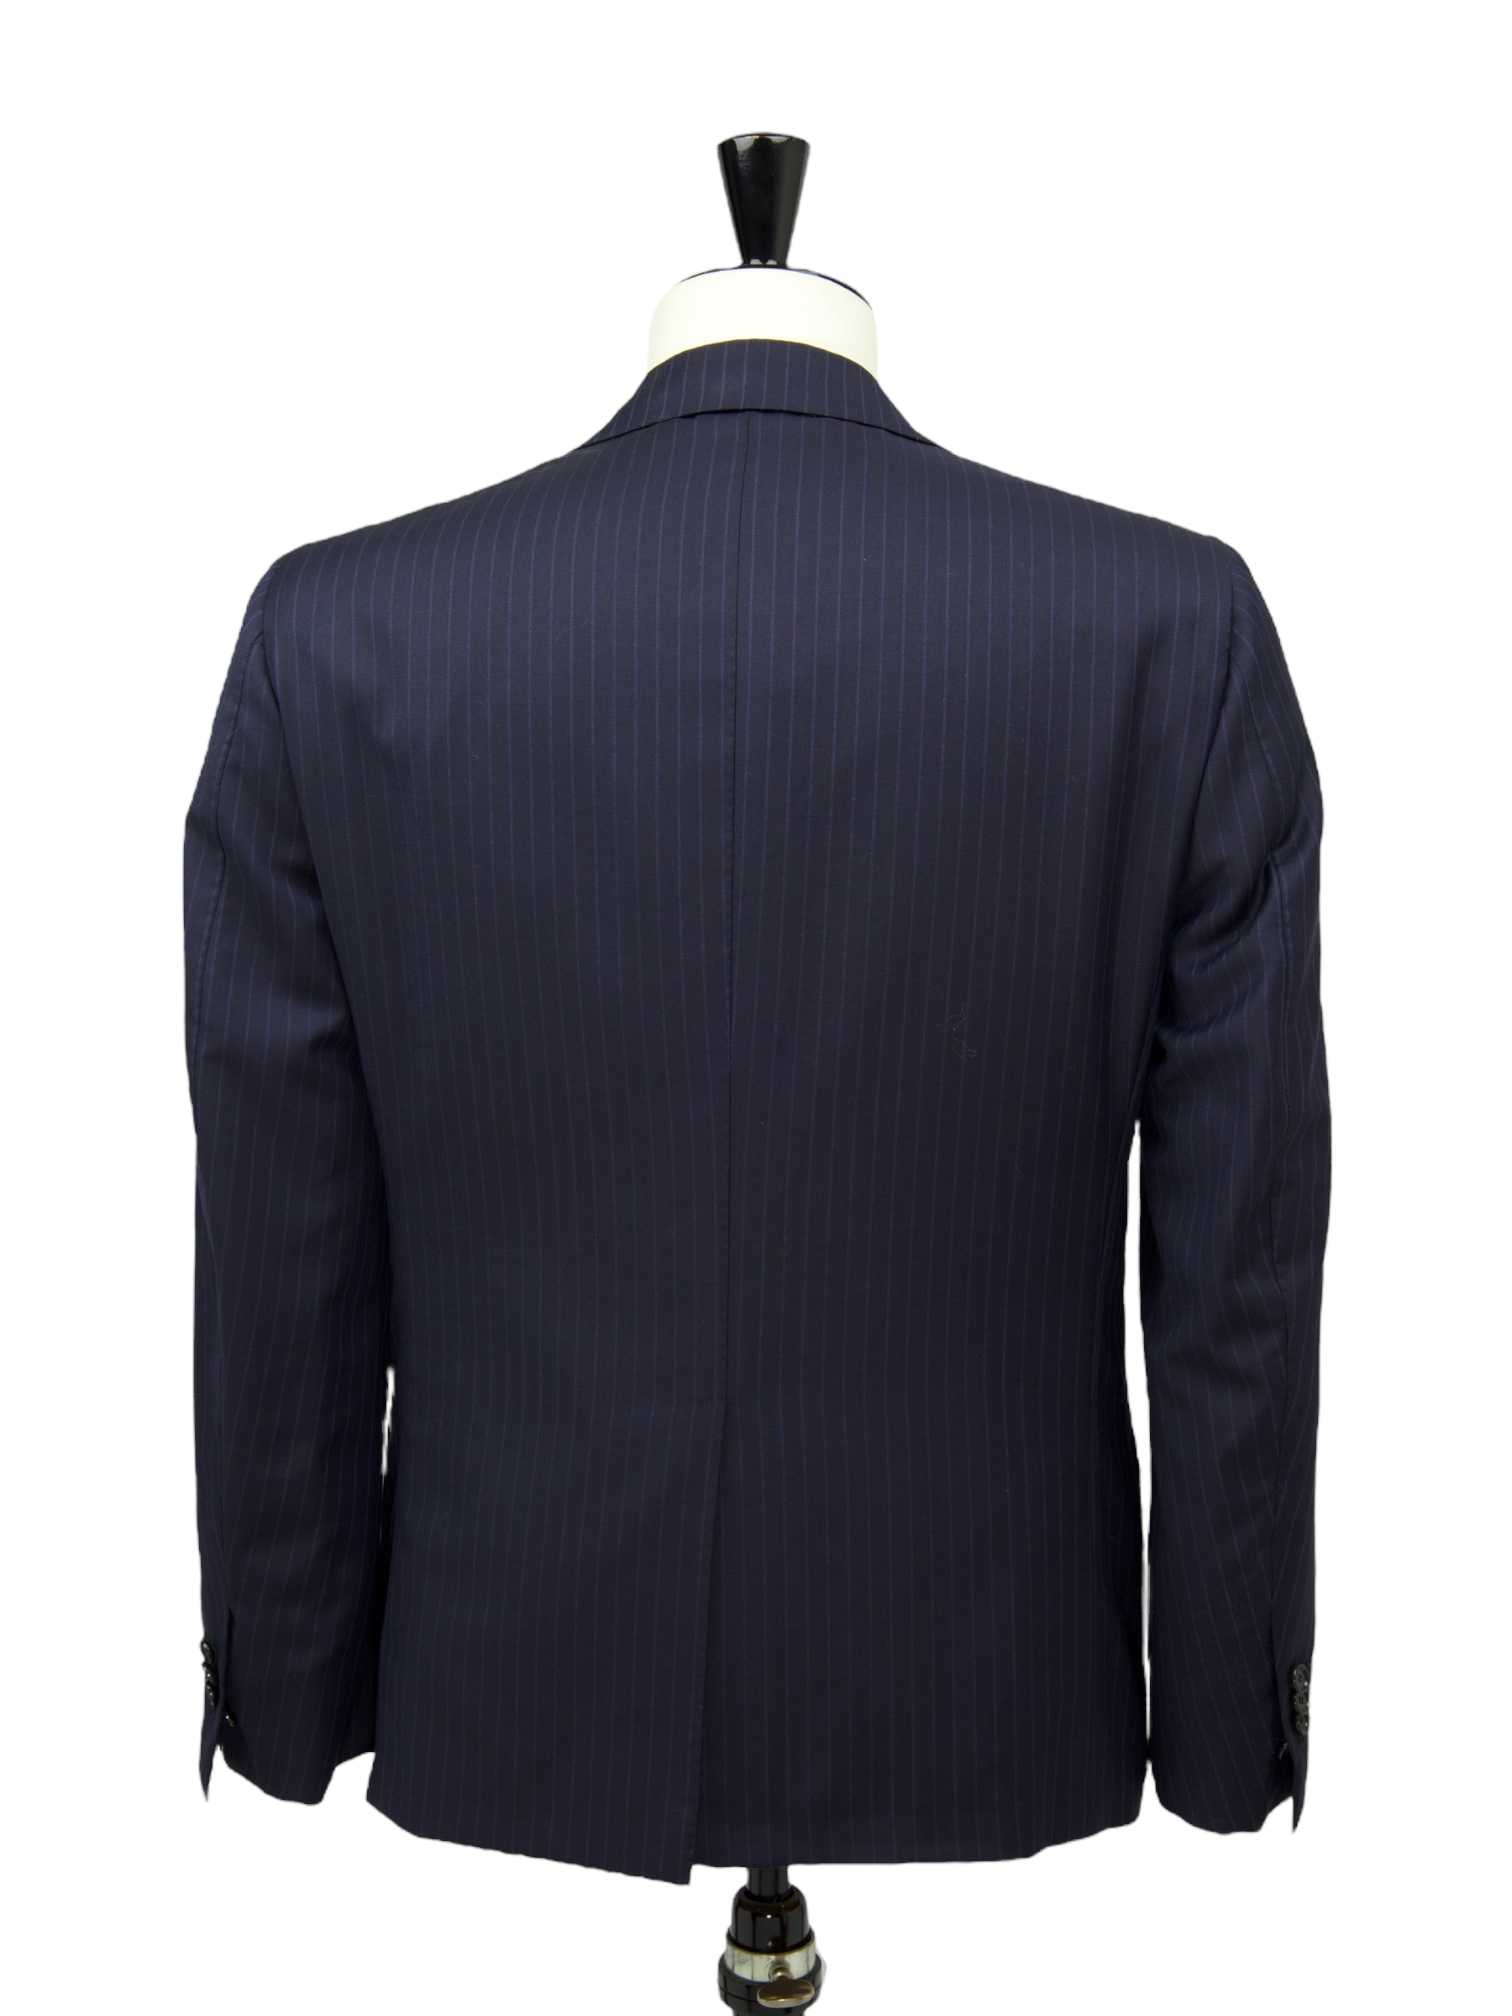 Cesare Attolini Blue Pinstripe Suit